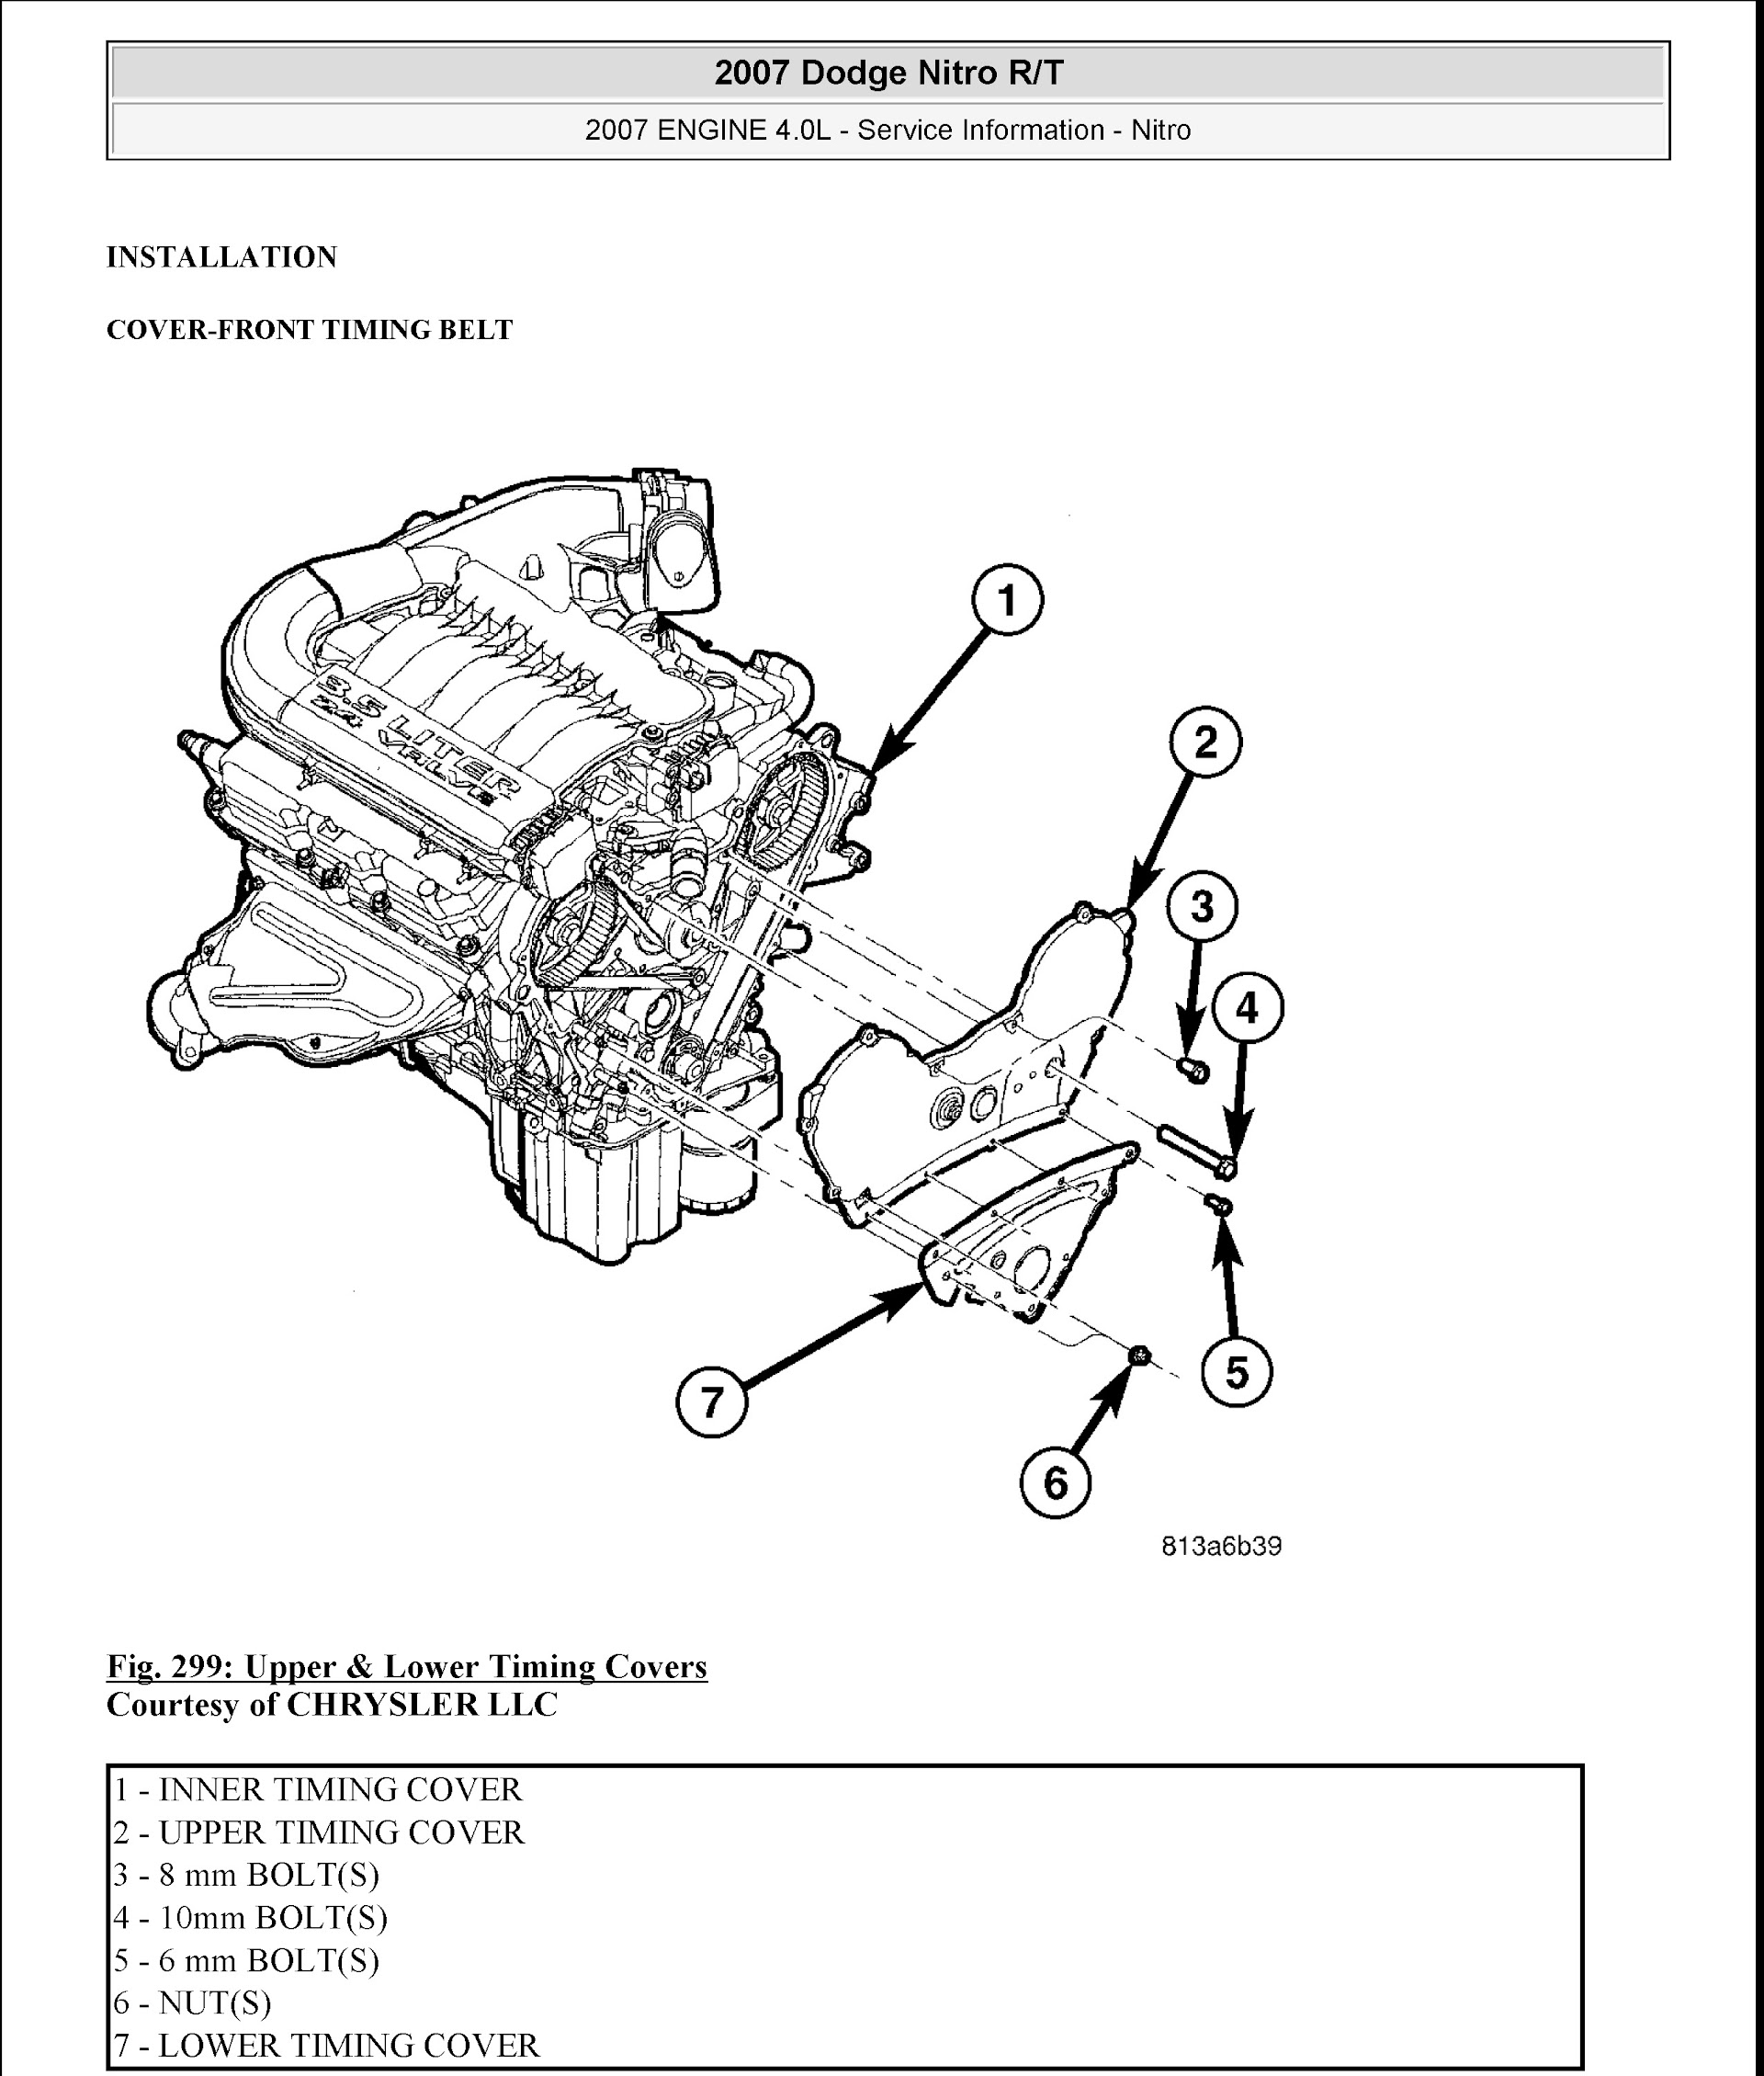 Download 2007 Dodge Nitro R/T Repair Manual